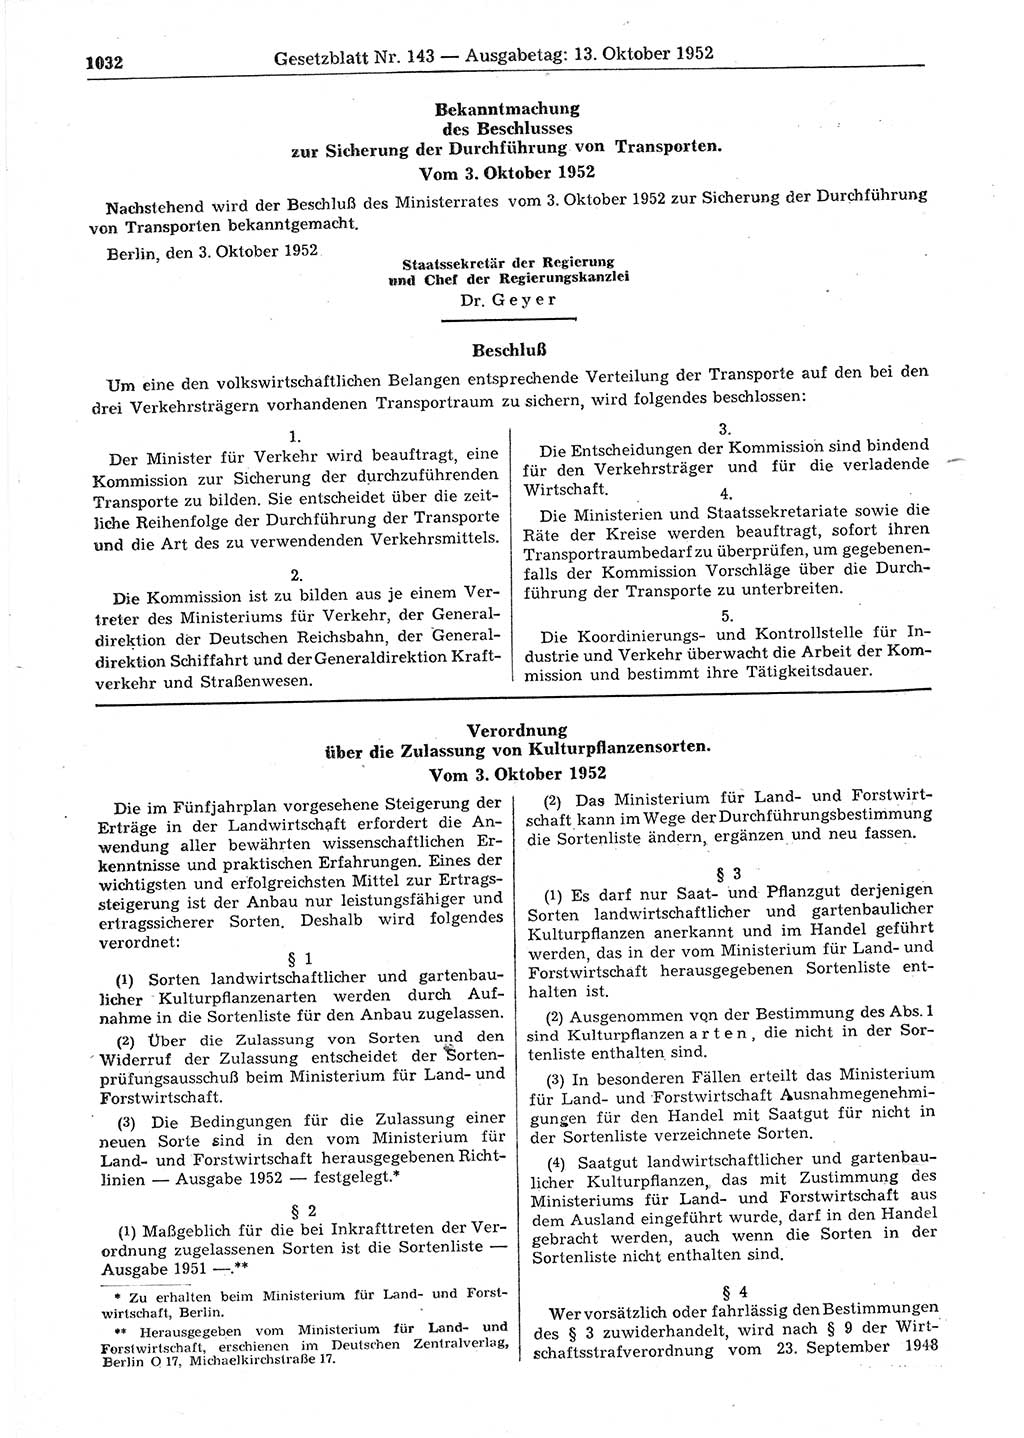 Gesetzblatt (GBl.) der Deutschen Demokratischen Republik (DDR) 1952, Seite 1032 (GBl. DDR 1952, S. 1032)